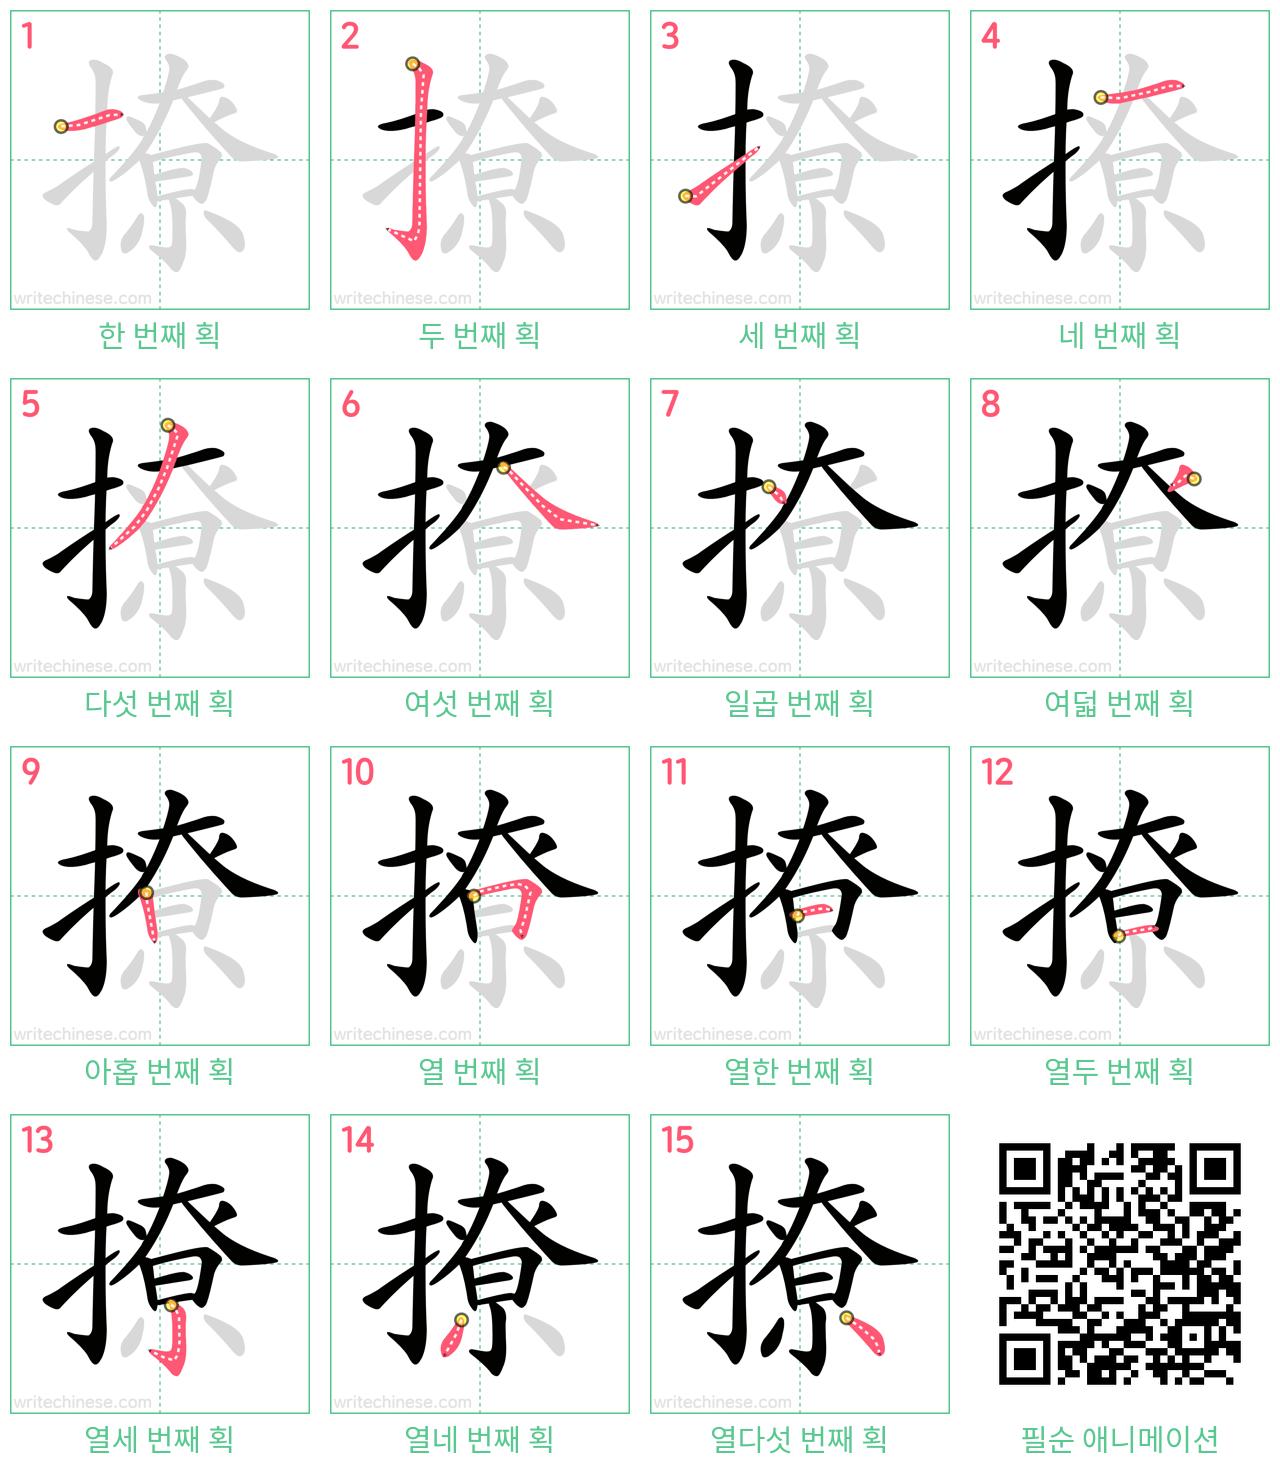 撩 step-by-step stroke order diagrams